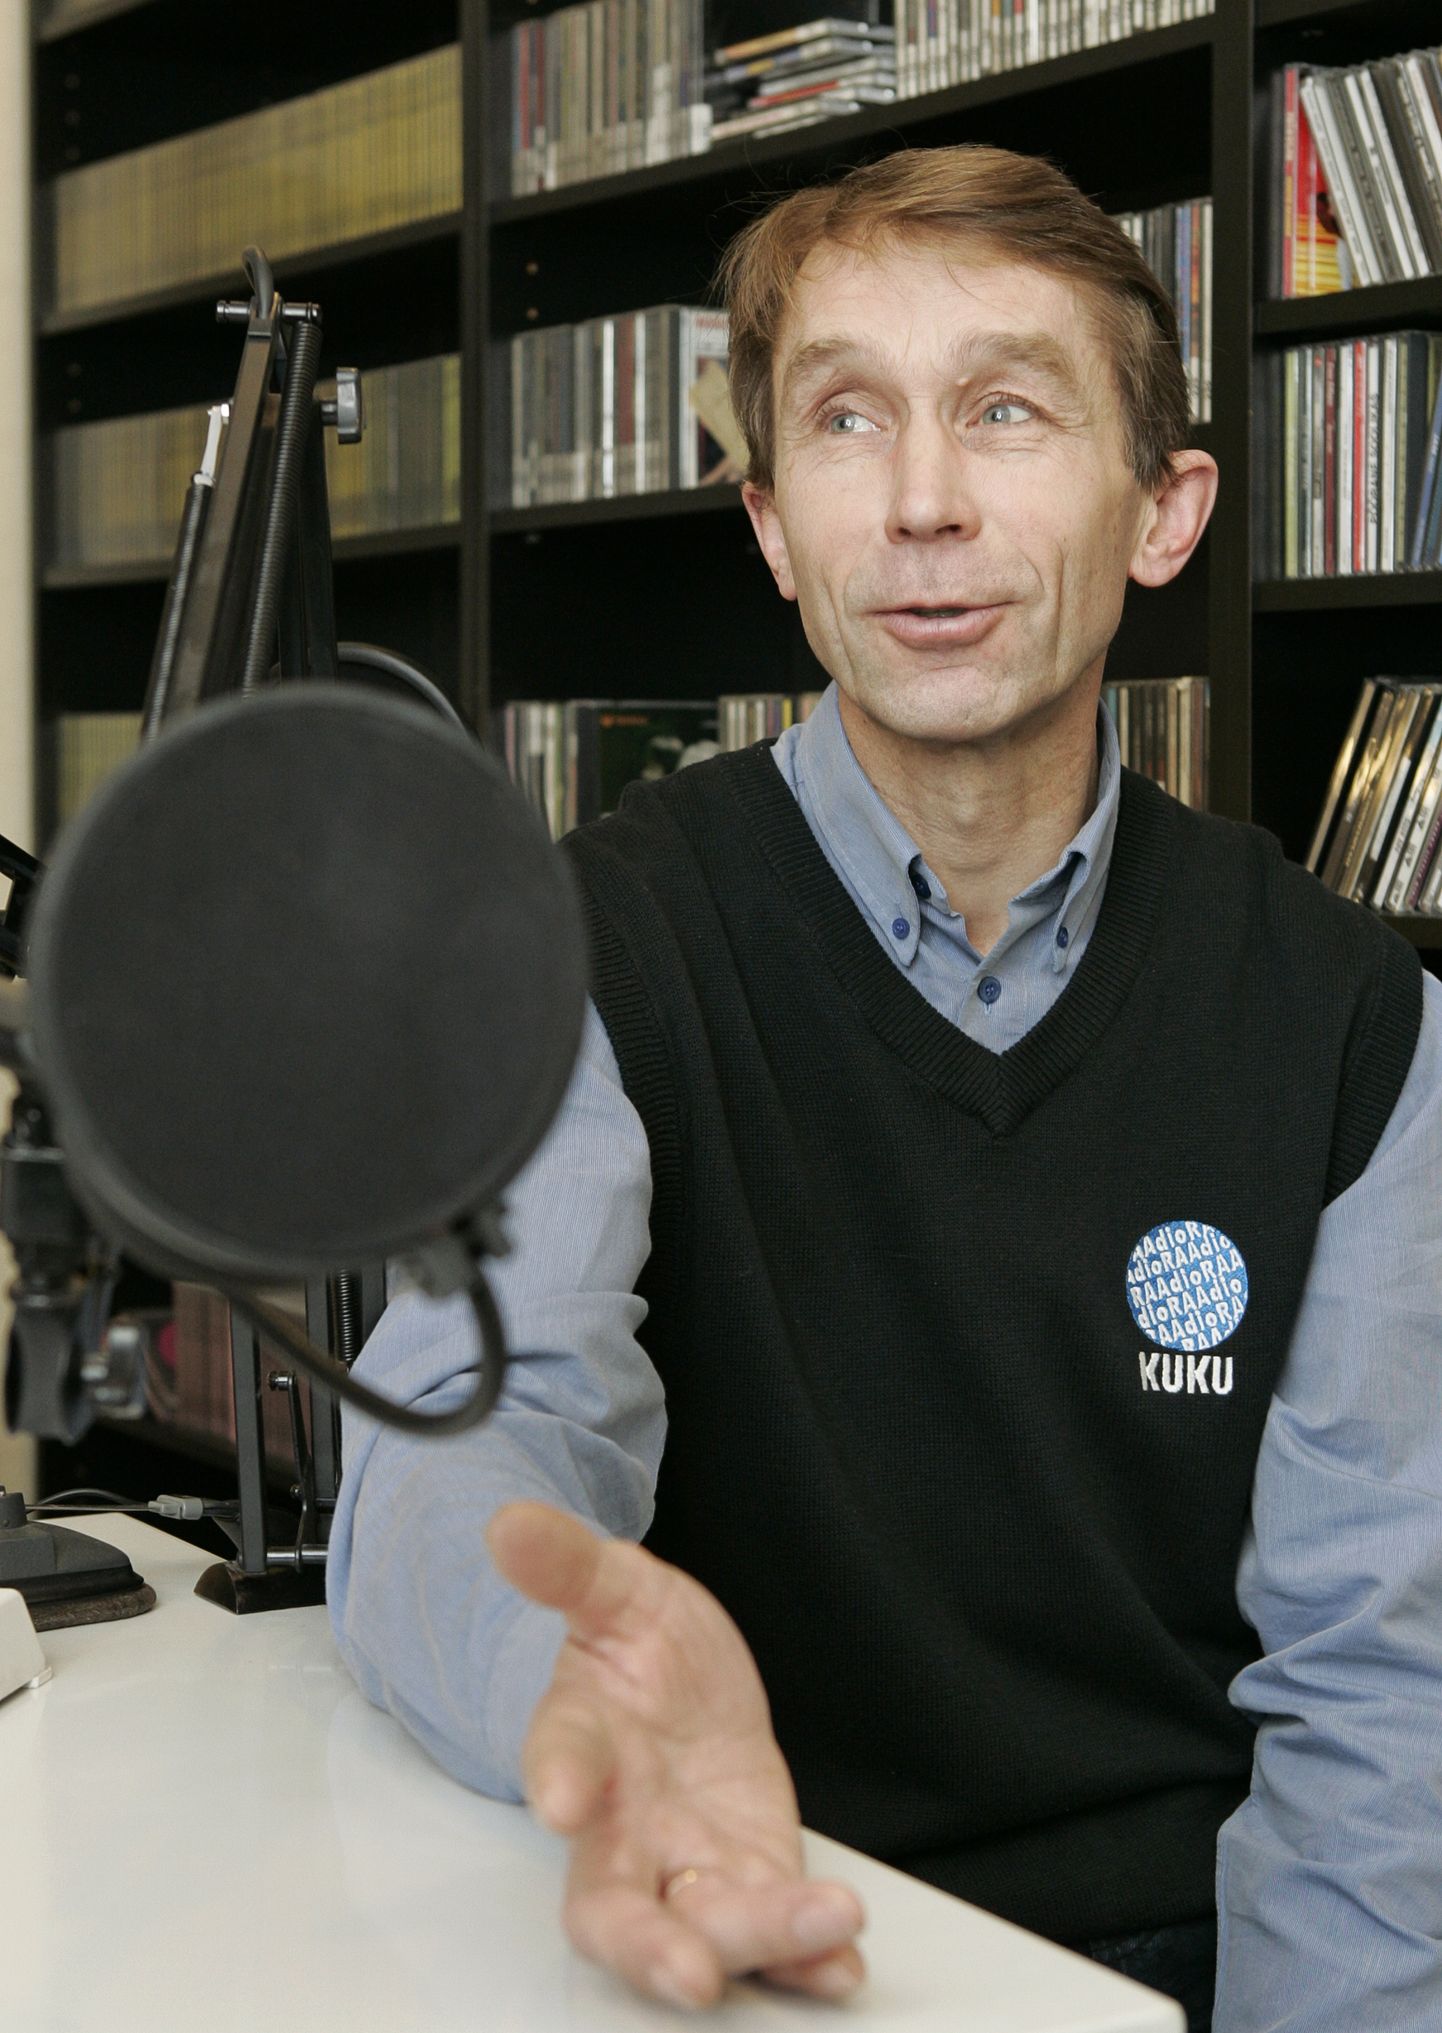 44 AASTAT RAADIOTÖÖD: 1976. aasta 2. aprillil oli Vikerkajas eetris praeguse Kuku raadio toimetaja Madis Ligi esimene lugu.